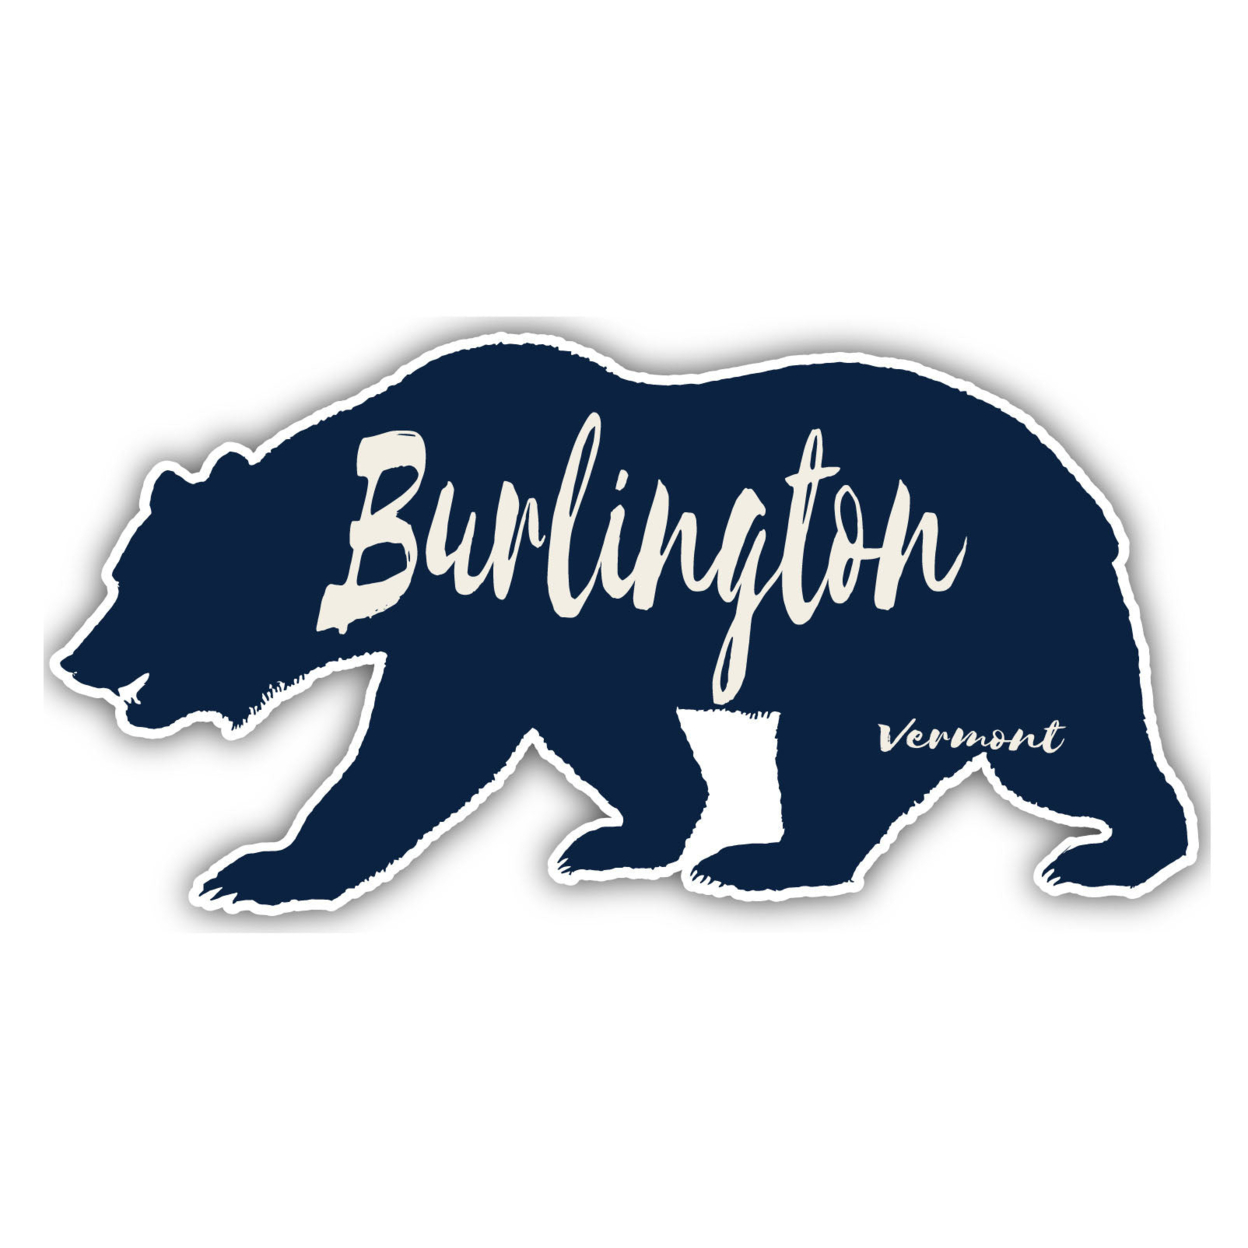 Burlington Vermont Souvenir Decorative Stickers (Choose Theme And Size) - 4-Pack, 12-Inch, Tent